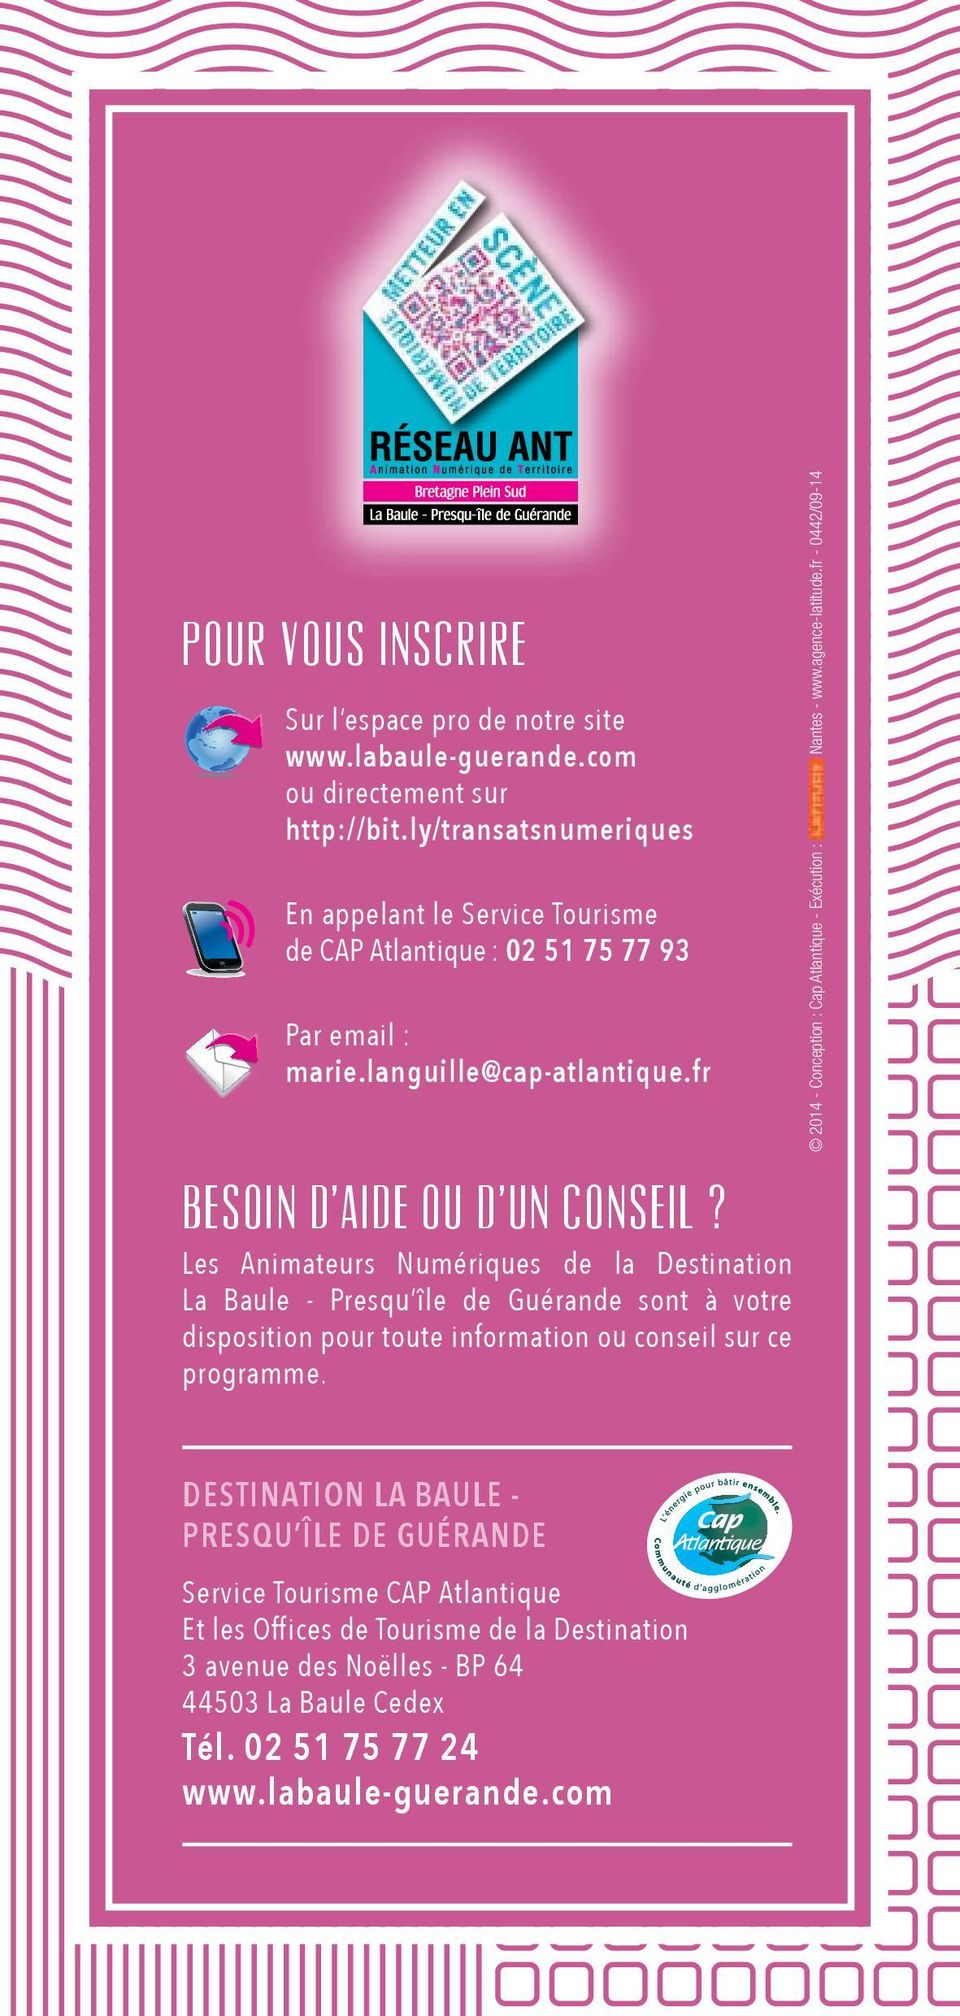 Les Animateurs Numériques de la Destination La Baule - Presqu île de Guérande sont à votre disposition pour toute information ou conseil sur ce programme.